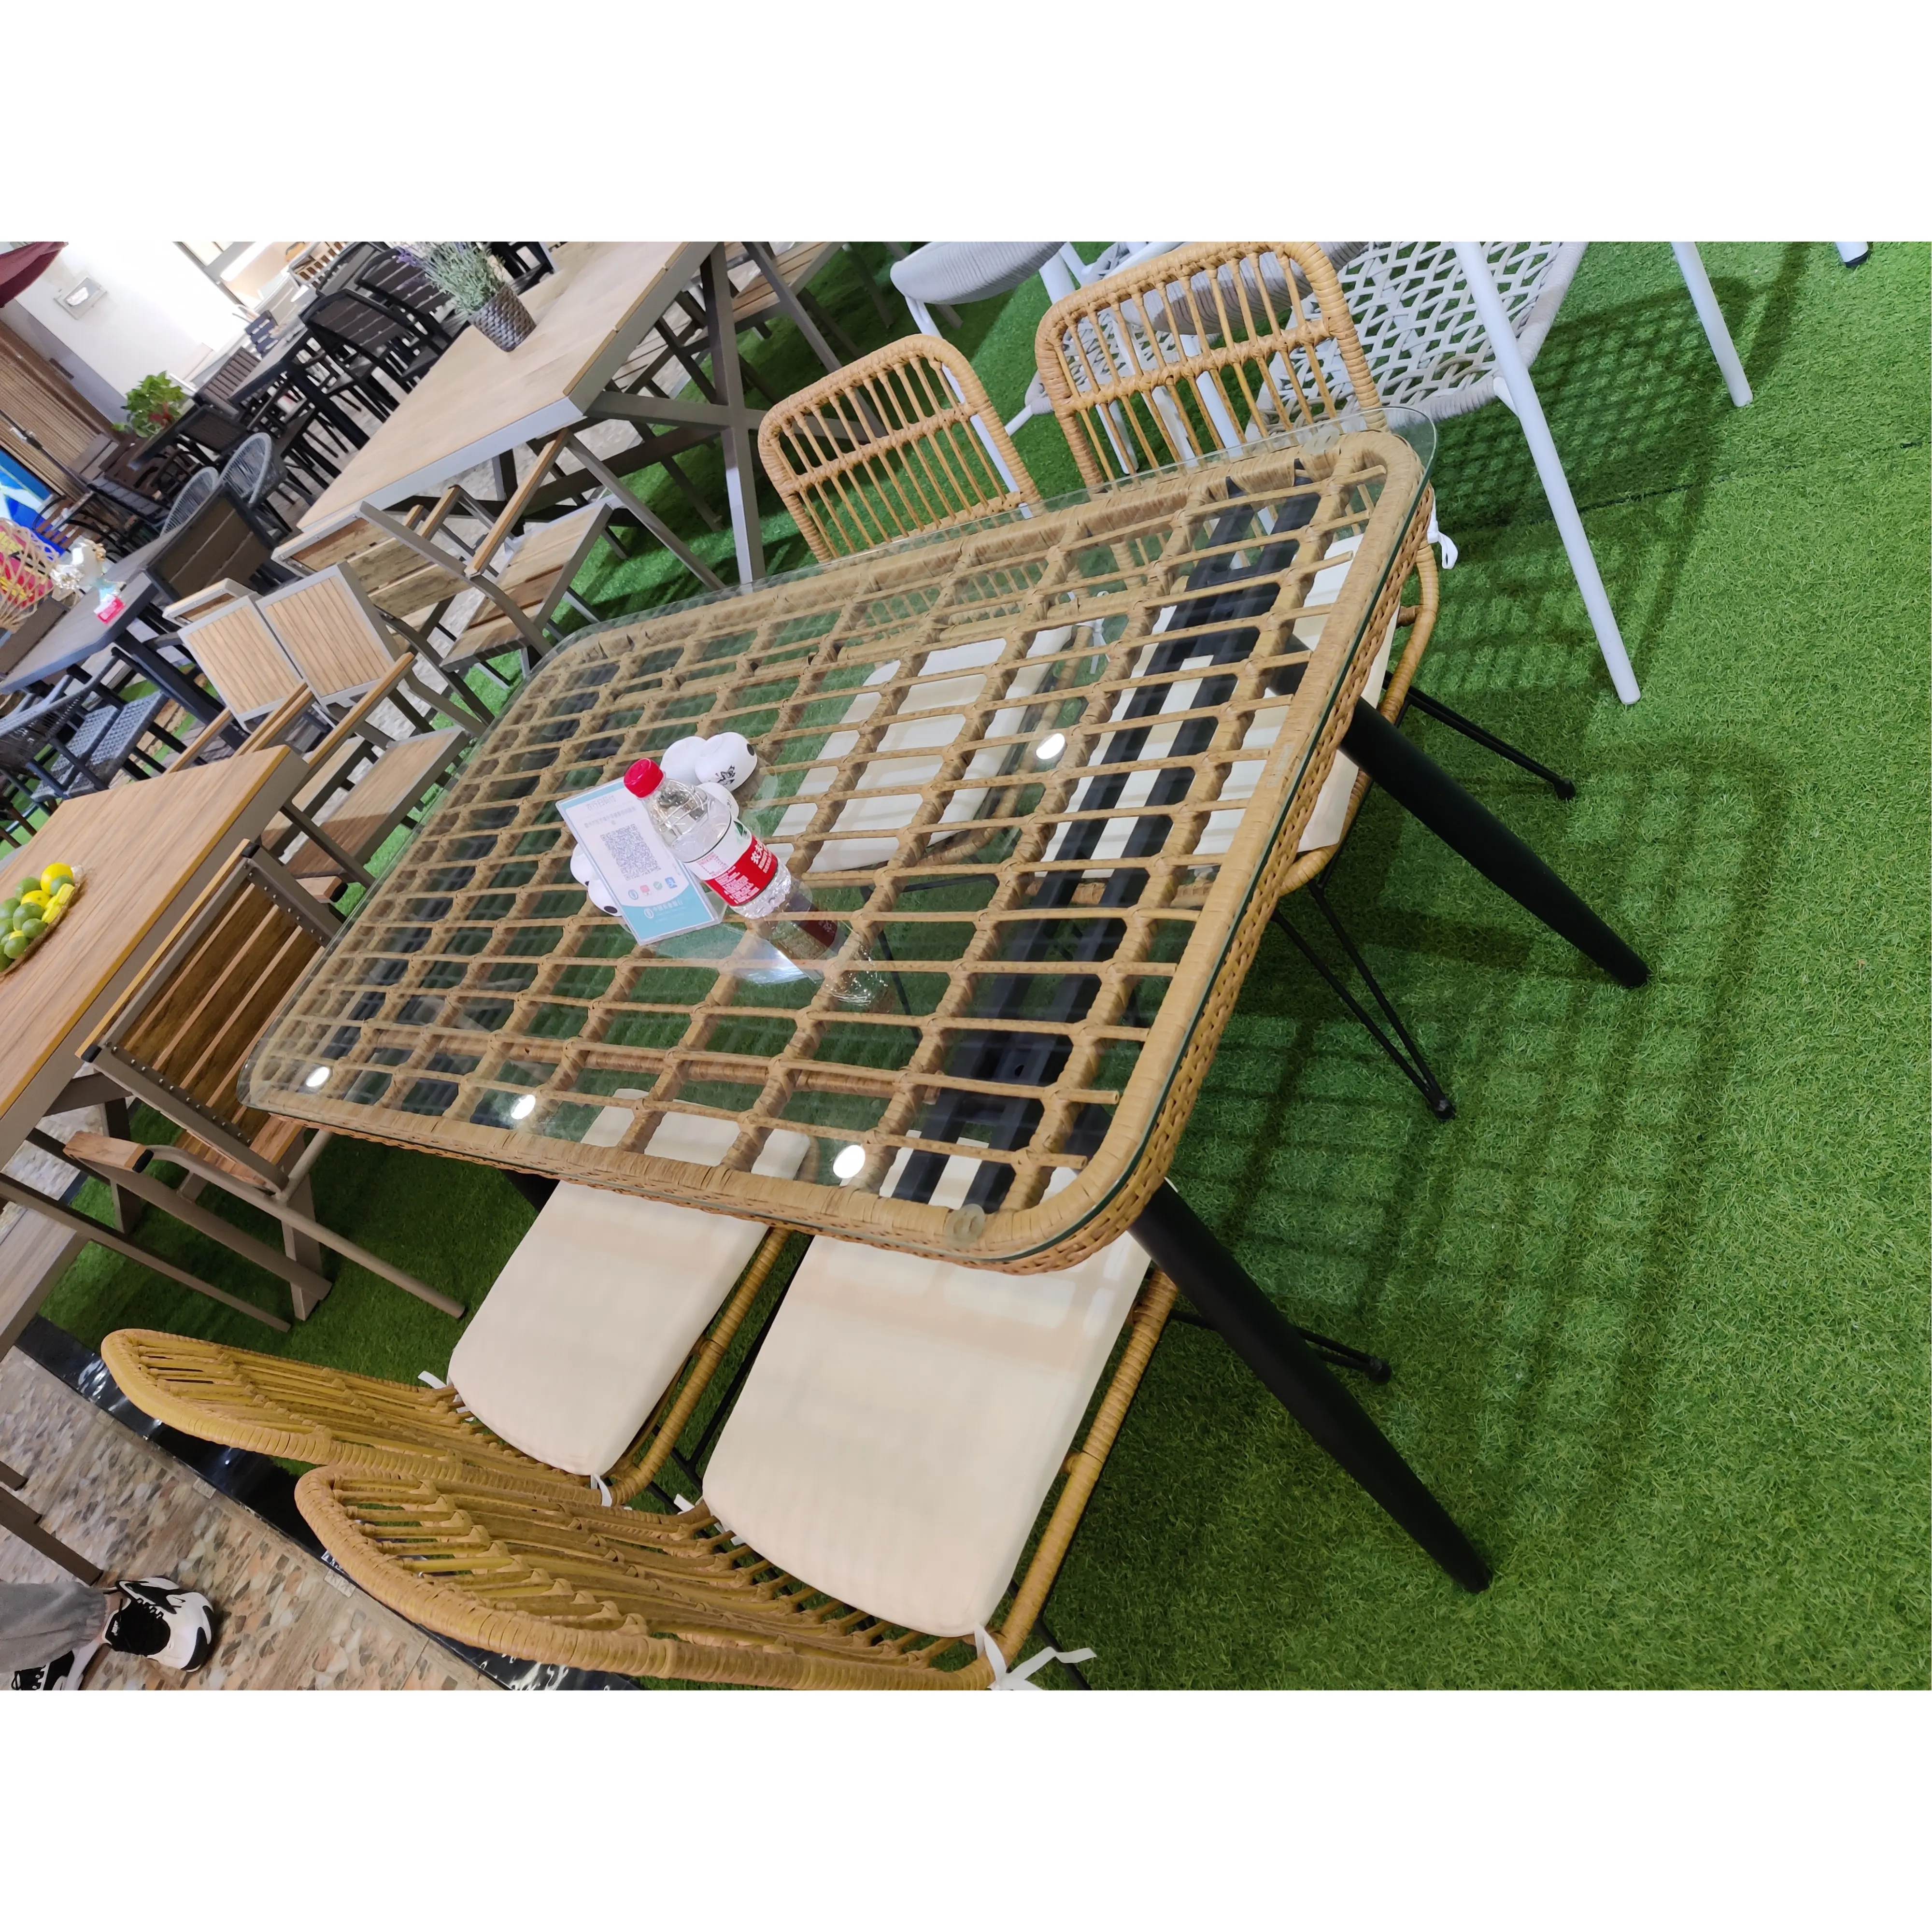 İskandinav açık rattan bahçe yemek masası mobilyası lüks dökme alüminyum bahçe veranda rattan bahçe mobilyaları setleri